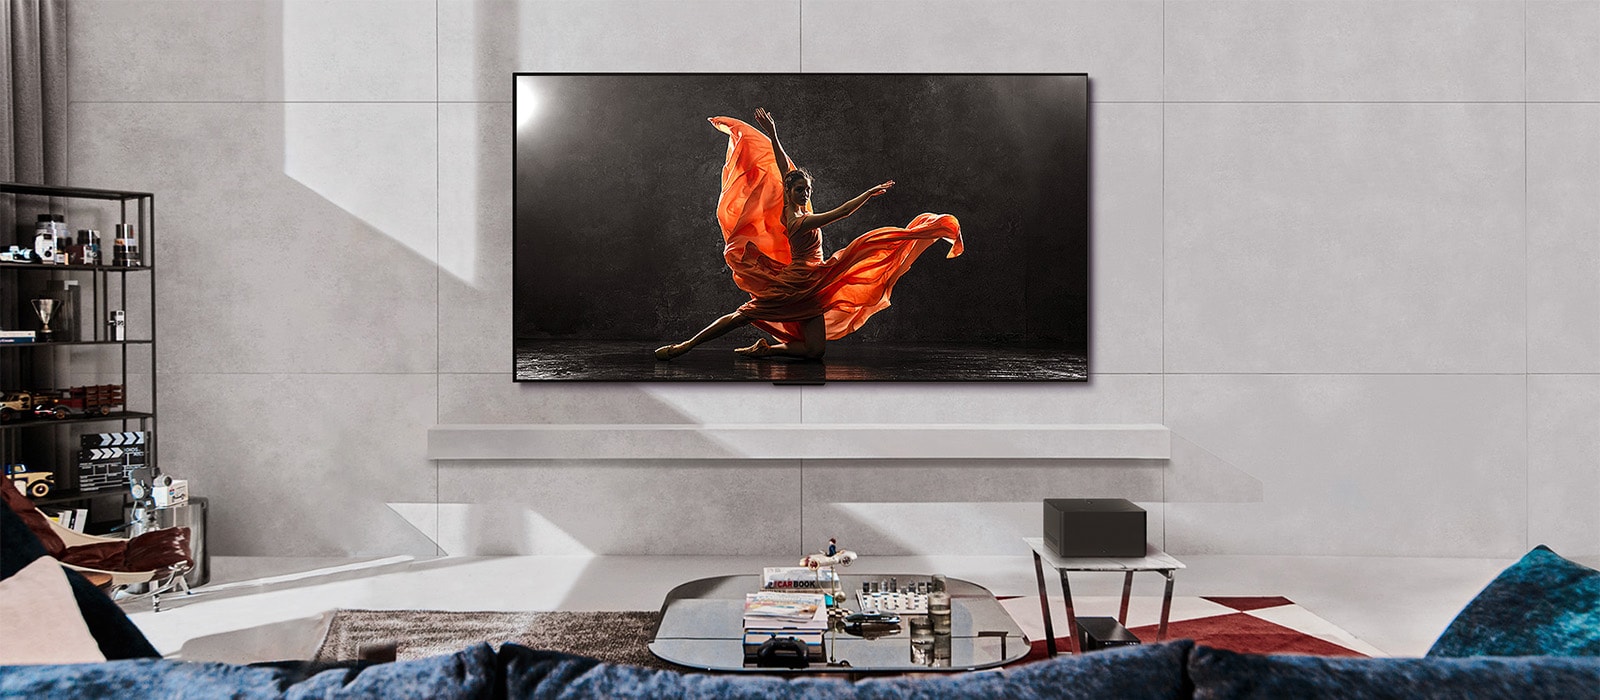 Televizor LG SIGNATURE OLED M4 i kućno LG Soundbar u modernom stambenom prostoru danju. Slika osobe koja pleše na tamnoj sceni prikazuje se s idealnom razinom osvjetljenja.